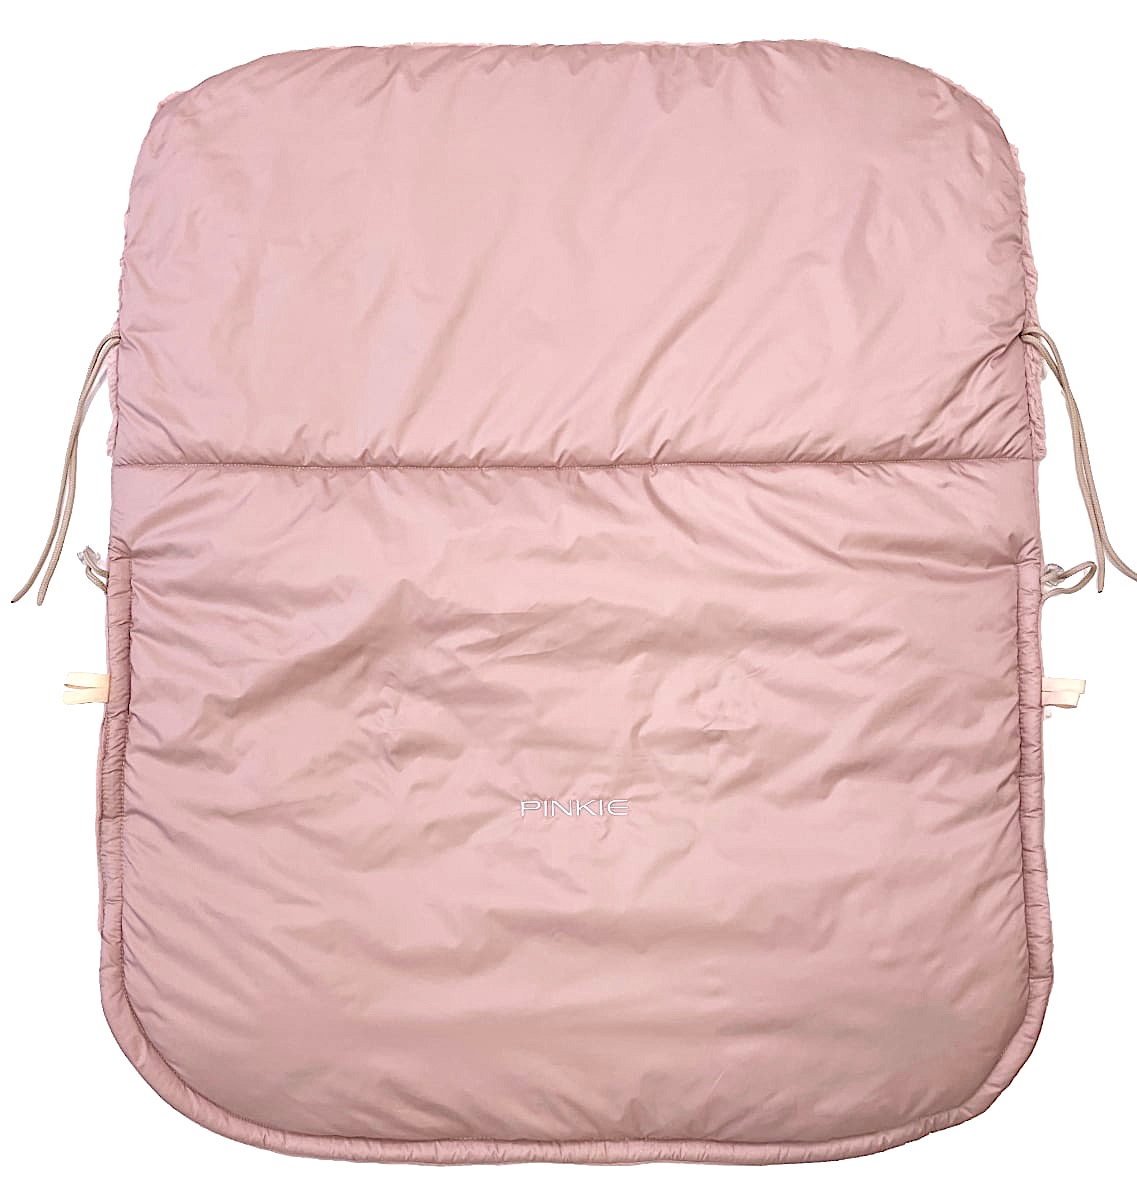 kliknutít zobrazíte maximální velikost obrázku zateplená stahovací deka Pinkie Fur Pink